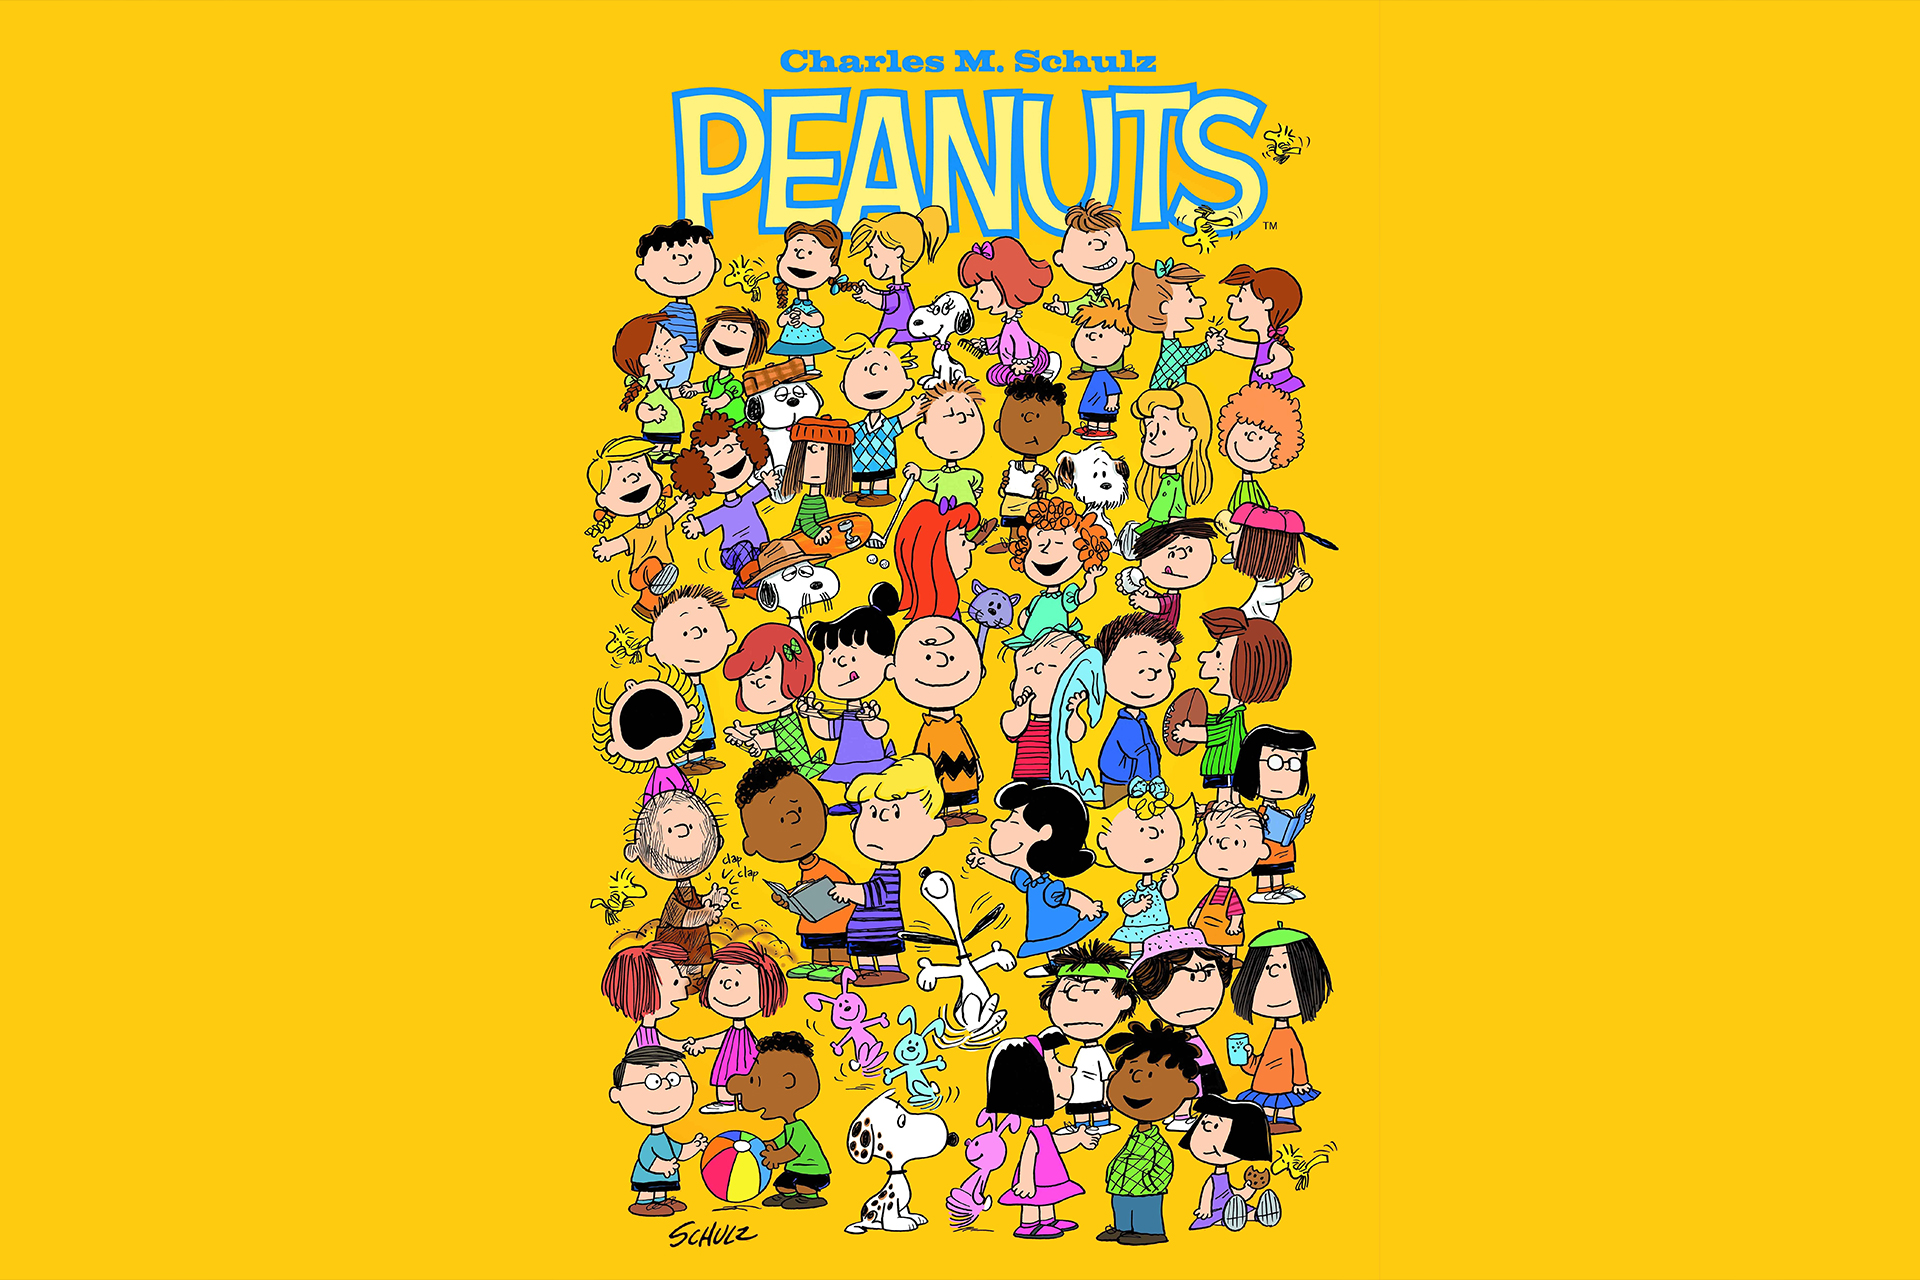 peanuts wallpaper,cartoon,text,animated cartoon,yellow,font